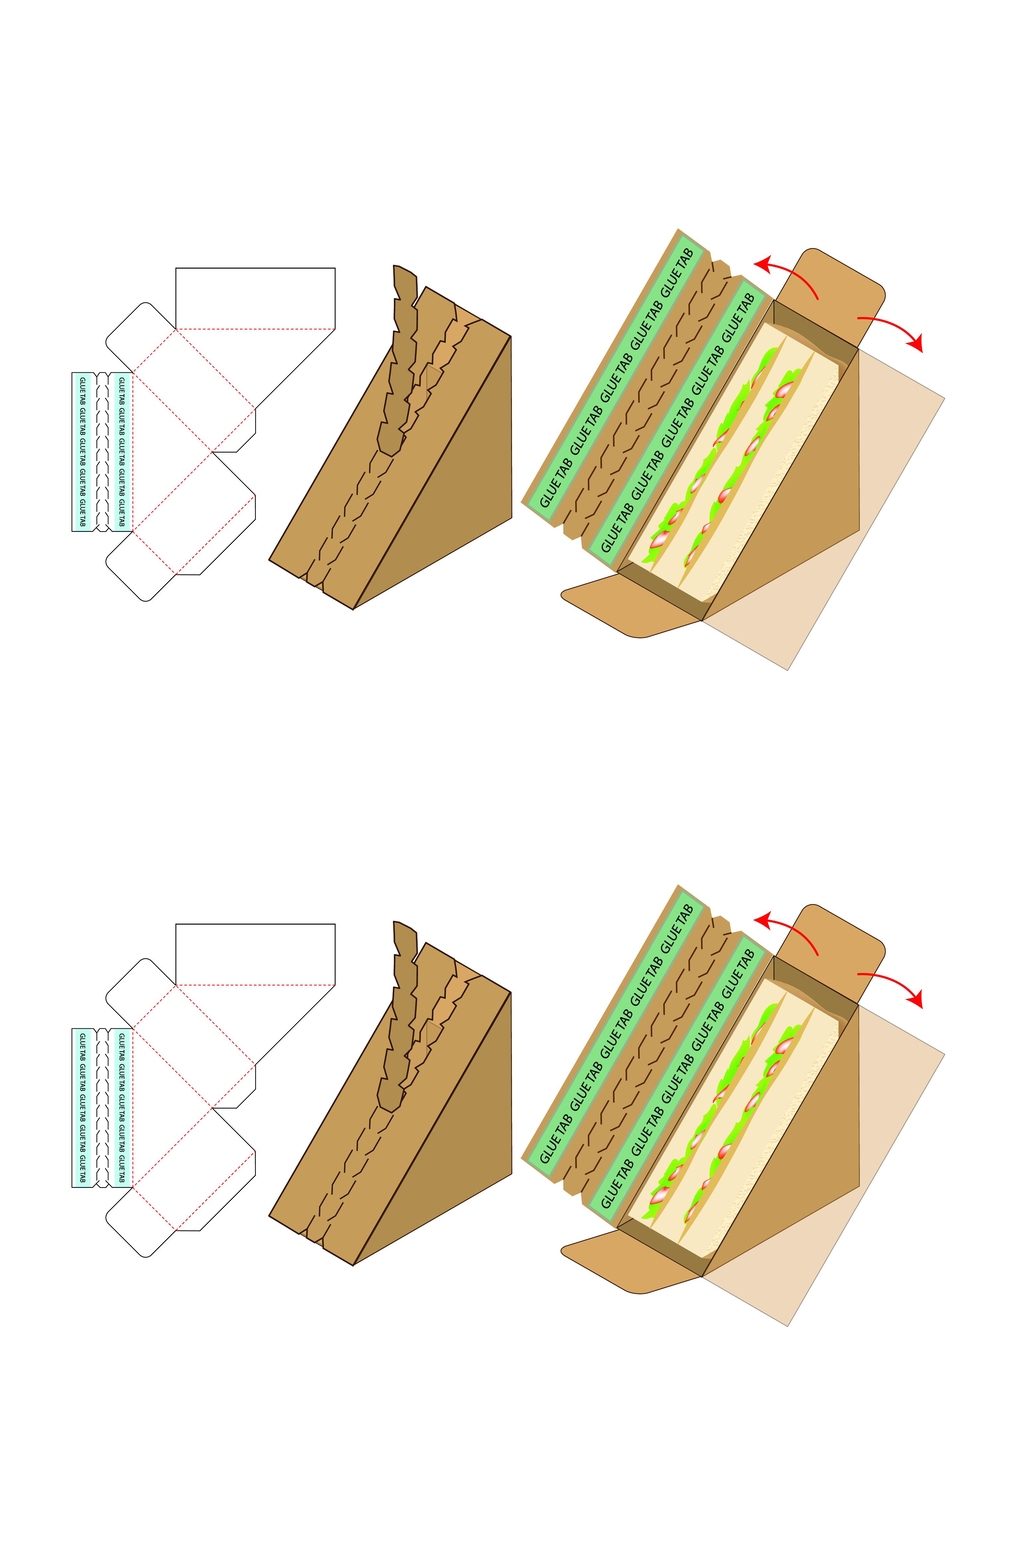 彩盒刀模图制作步骤图片